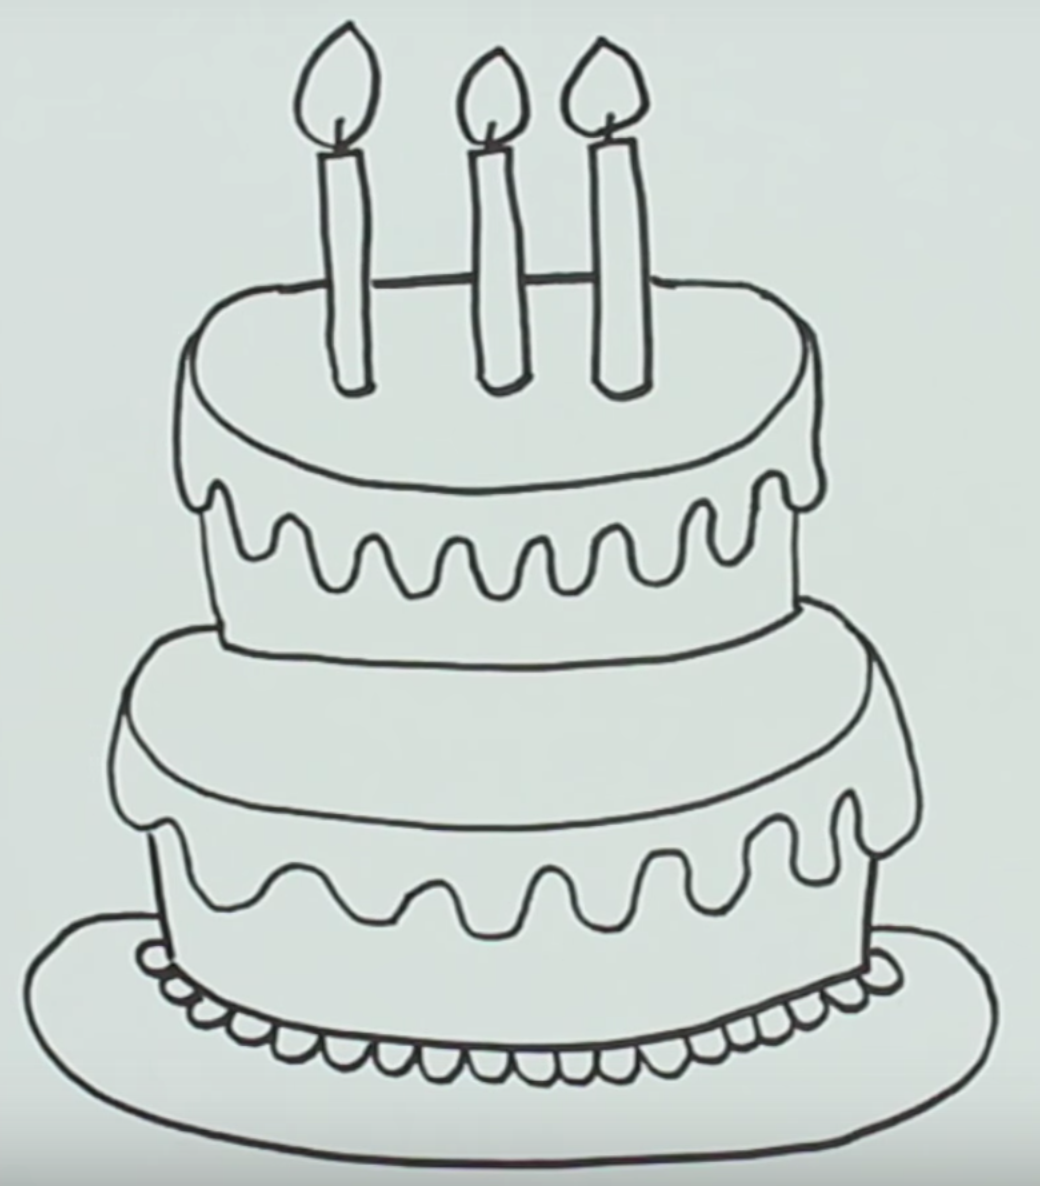 Какие рисунки можно нарисовать на день рождения. Рисунок торта для срисовки. Торт рисунок для детей карандашом. Рисунок торта на день рождения карандашом. Рисунки тортиков для срисовки.